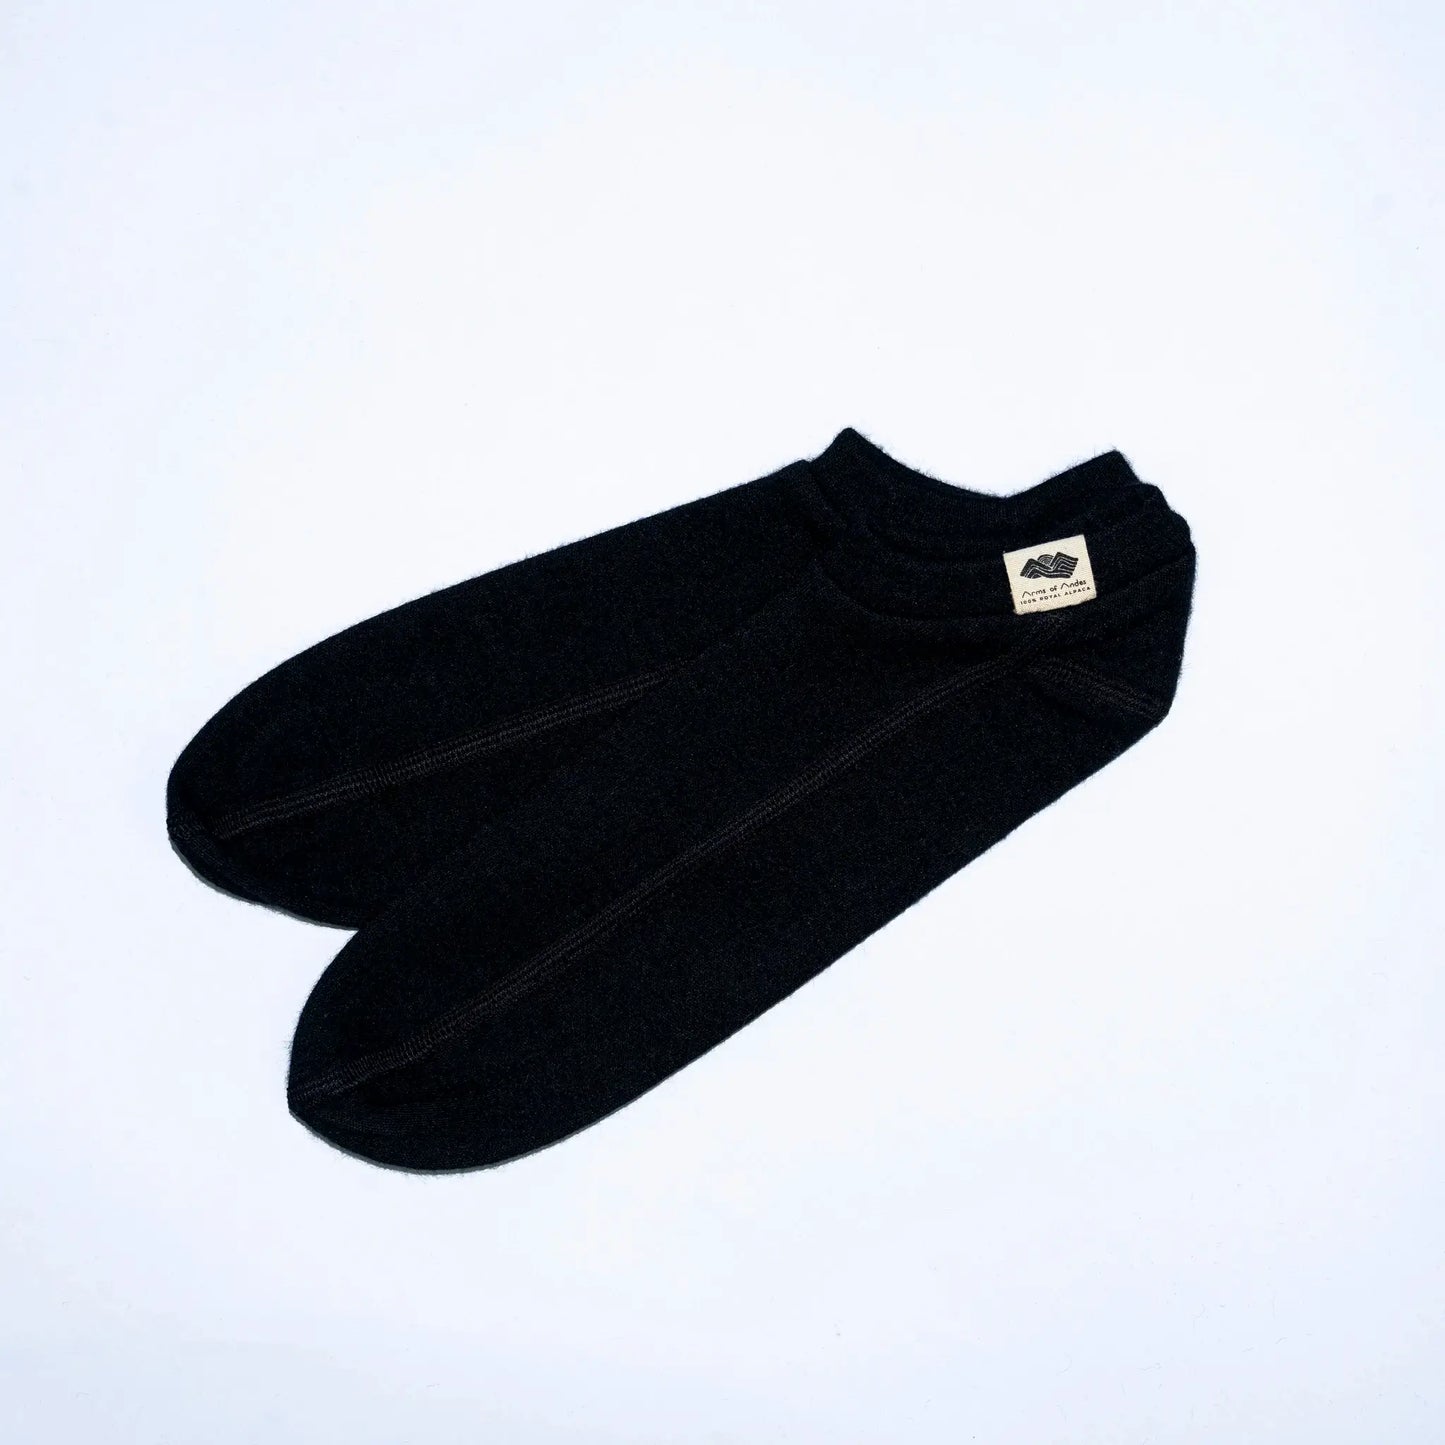 unisex slipper socks fast drying color black